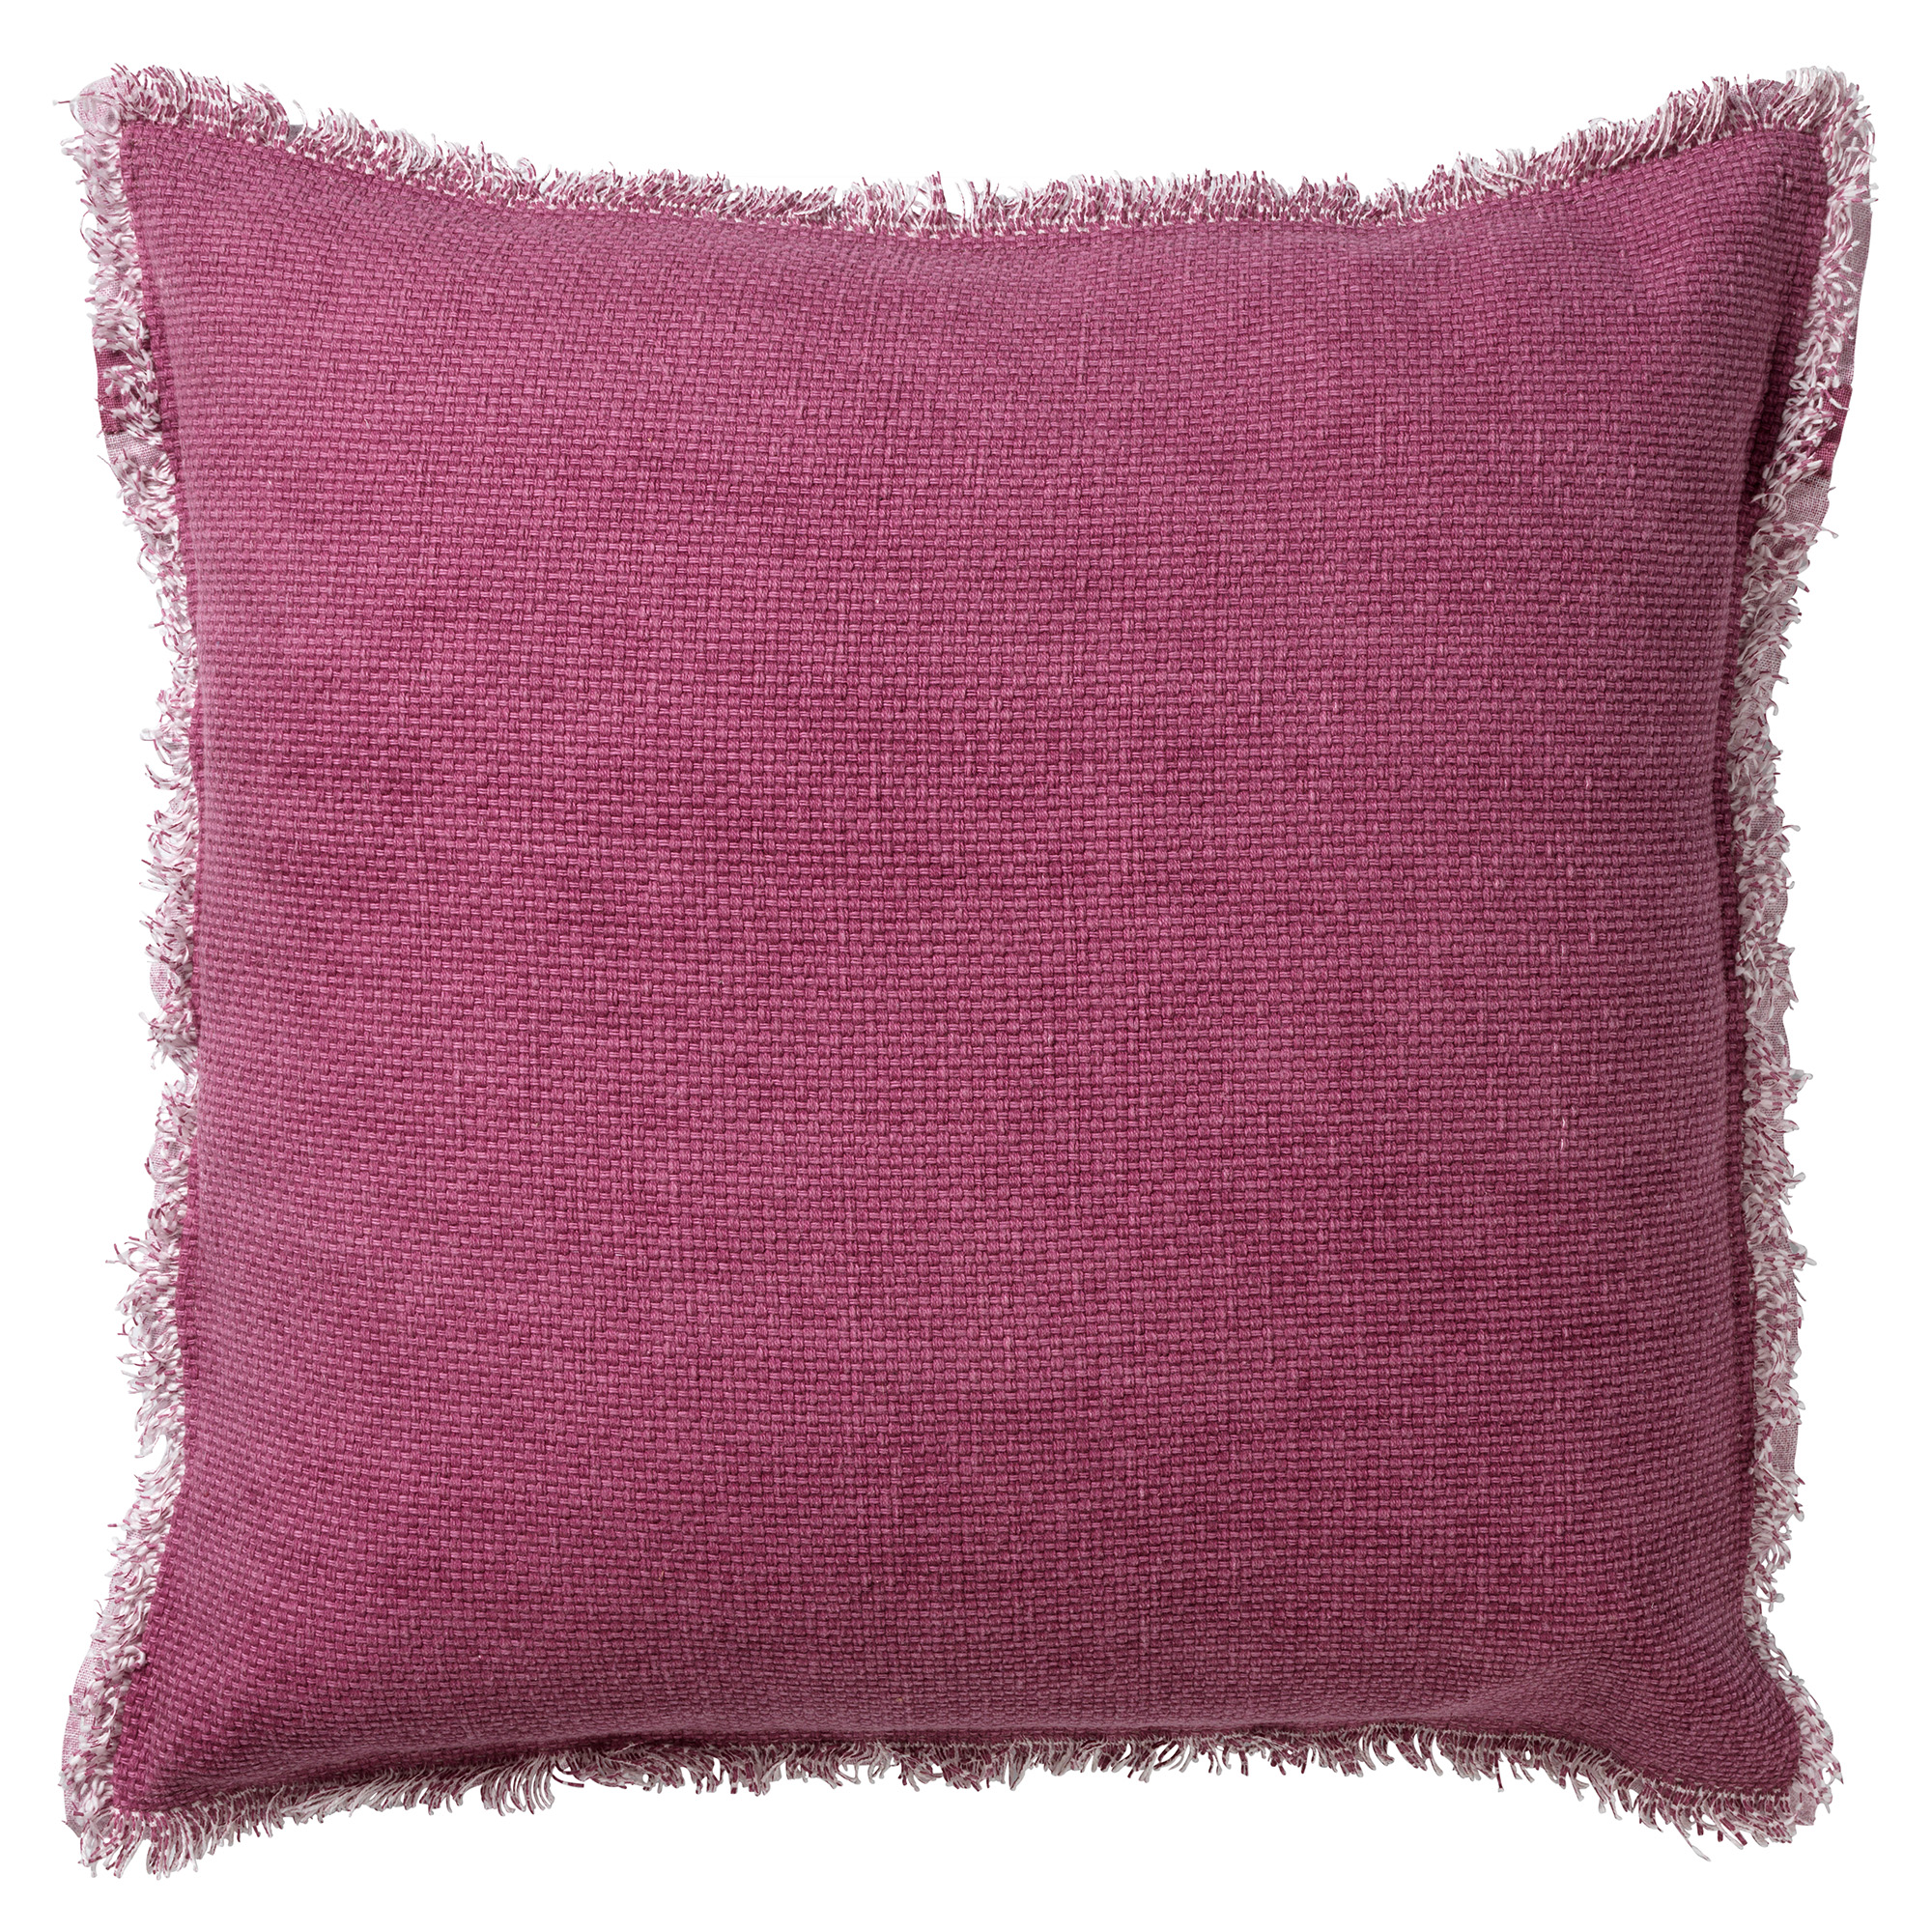 BURTO - Sierkussen 45x45 cm - gewassen katoen - Heather Rose - roze